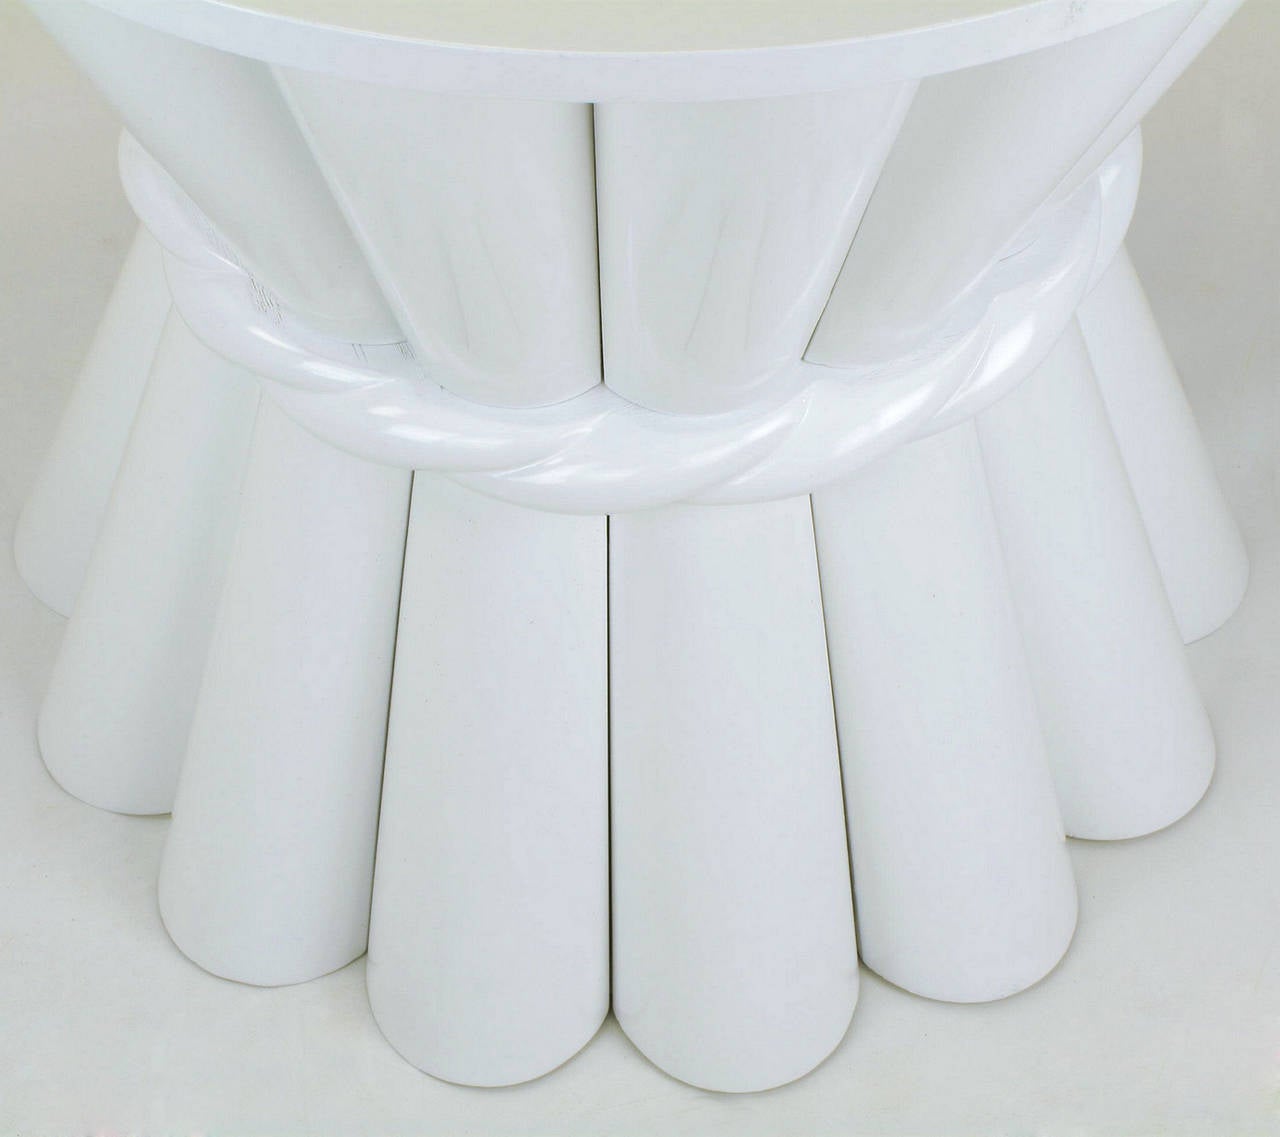 Fin du 20e siècle Paire de tables d'appoint rondes en laque brillante blanche 